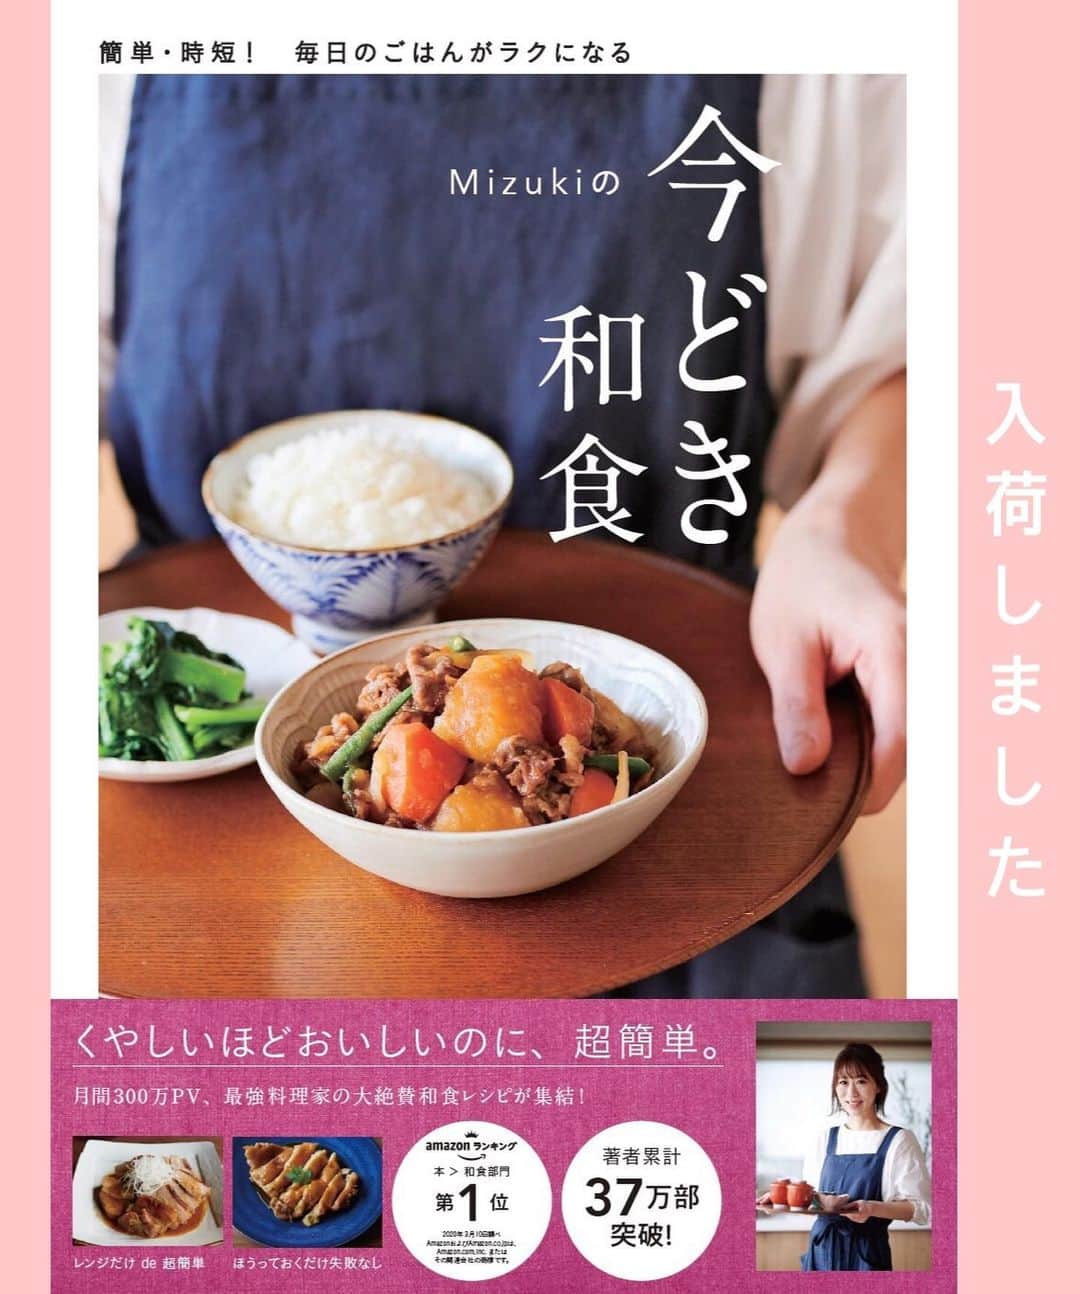 Mizuki【料理ブロガー・簡単レシピ】さんのインスタグラム写真 - (Mizuki【料理ブロガー・簡単レシピ】Instagram)「・﻿ 【レシピ】ーーーーーーーーーーーーーーーー﻿ ♡レンジde6分！豚肉と野菜のプルコギ風♡﻿ ーーーーーーーーーーーーーーーーーーーーー﻿ ﻿ ﻿ ﻿ おはようございます(*^^*)﻿ ﻿ 今日ご紹介させていただくのは﻿ レンジで作るプルコギ風♡﻿ お手軽な豚こま&残り野菜でできる﻿ 簡単・時短・節約レシピです(*´艸`)﻿ ﻿ 調味料に片栗粉を加えることで﻿ お肉がしっとりと仕上がり﻿ レンジで作ったとは思えませんよ〜！﻿ ごはんにもお酒にも合うので﻿ よかったらお試し下さいね(*^^*)﻿ ﻿ ﻿ ﻿ ーーーーーーーーーーーーーーーーーーーー﻿ 【2人分】﻿ 豚こま切れ肉...180g﻿ 玉ねぎ...1/4個﻿ 人参...1/3本﻿ ピーマン...2個﻿ ●醤油・酒・ごま油...各大1﻿ ●砂糖・オイスターソース...各大1/2﻿ ●片栗粉...小1﻿ (好みで)白ごま...適量﻿ ﻿ 1.玉ねぎは薄切りにする。人参とピーマンは細切りにする。﻿ 2.耐熱ボウルに●を入れて混ぜ、豚肉を加えて揉み込む。続けて1も加えて更に揉み込む。﻿ 3.ふんわりラップし、600Wのレンジで6分加熱する。よく混ぜて器に盛り、ごまを振る。﻿ ーーーーーーーーーーーーーーーーーーーー﻿ ﻿ ﻿ ﻿ 《ポイント》﻿ ♦︎オイスターソースがなければ、お醤油を多めに加えて下さい♩﻿ ♦︎仕上げにラー油をかけても美味しいです♩﻿ ﻿ ﻿ ﻿ ﻿ ﻿ ﻿ ﻿ ﻿ 🔻入荷しました🔻﻿ ストーリーにリンク貼っています🙇‍♀️﻿ ＿＿＿＿＿＿＿＿＿＿＿＿＿＿＿＿＿＿＿﻿ 📕\ \ 新刊発売中 / /📕﻿ 簡単・時短！ 毎日のごはんがラクになる﻿ ✨🦋 【 #Mizukiの今どき和食 】🦋✨﻿ ＿＿＿＿＿＿＿＿＿＿＿＿＿＿＿＿＿＿＿﻿ ﻿ なるべく少ない材料で﻿ 手間も時間も省きながら﻿ 簡単にできるおいしい和食レシピ♩﻿ 簡単に失敗なくマスターできる一冊で﻿ もっと気軽に、カジュアルに﻿ 和食を楽しんで下さいね(*^^*)﻿ ﻿ ﻿ ーーー ⭐️PART.1 メインおかず ⭐️ーーー﻿ 素材別にレシピをご紹介しています♩﻿ 和食の定番から新定番まで﻿ どれも押さえておきたいメニューばかり。﻿ 肉じゃがはフライパンで！焼き豚はレンジで！﻿ ぶり大根は切り身を使って手軽に作ります♩﻿ ﻿ ーーー ☘️PART.2 サブおかず ☘️ーーー﻿ 年中手に入るお手頃野菜と﻿ 乾物や大豆、こんにゃくなどを使った﻿ 副菜レシピをたっぷり掲載！！﻿ 普段SNSではメインおかずばかりなので﻿ 本では副菜にも力を入れています(*^^*)﻿ ﻿ ーーー 🌸PART.3 ごはんと汁物 🌸ーーー﻿ ささっと作れる丼と麺、﻿ みんなで食べたいいなり寿司や﻿ 手巻きごはんもご紹介！﻿ 複数の炊き込みごはんと﻿ 味噌汁&和風スープも盛りだくさん！﻿ ﻿ ﻿ 各レシピのポイントは﻿ 【写真付きで丁寧に解説】﻿ 副菜レシピもたっぷりなので﻿ 【メインページに副菜メモもつけました】﻿ ＊このメインにはこの副菜が合いますよ〜﻿ という献立の提案です(*^^*)﻿ 【その他コラムも充実】﻿ 全127品中ほぼ全て﻿ 【本だけのレシピです！】﻿ ＿＿＿＿＿＿＿＿＿＿＿＿＿＿＿＿＿＿＿﻿ ﻿ ﻿ ﻿ ﻿ ﻿ ＿＿＿＿＿＿＿＿＿＿＿＿＿＿＿＿＿﻿ 🎀発売中🎀﻿ 【#ホットケーキミックスのお菓子 】﻿ ﻿ 一冊まるっとホケミスイーツ♩﻿ 普段のおやつから﻿ 特別な日にも使えるレシピを﻿ この一冊に詰め込みました(*^^*)﻿ ホットケーキミックスを使えば﻿ 簡単に本格的なお菓子が作れますよ♡﻿ ＿＿＿＿＿＿＿＿＿＿＿＿＿＿＿＿＿﻿ ﻿ ⭐️ストーリー、ハイライト、プロフ画面に﻿ 本のURLを貼らせていただいております♩﻿ →(@mizuki_31cafe )﻿ ﻿ ﻿ ﻿ ﻿ ﻿ #プルコギ#レンジ#豚肉#野菜#6分#うちで過ごそう#おうち時間#Mizuki#簡単レシピ#時短レシピ#節約レシピ#料理#レシピ#フーディーテーブル#マカロニメイト#おうちごはん#おうちカフェ#デリスタグラマー#料理好きな人と繋がりたい#おうちごはんlover#foodpic#follow#cooking#recipe#lin_stagrammer#stayhome#レンジプルコギm」5月21日 7時04分 - mizuki_31cafe